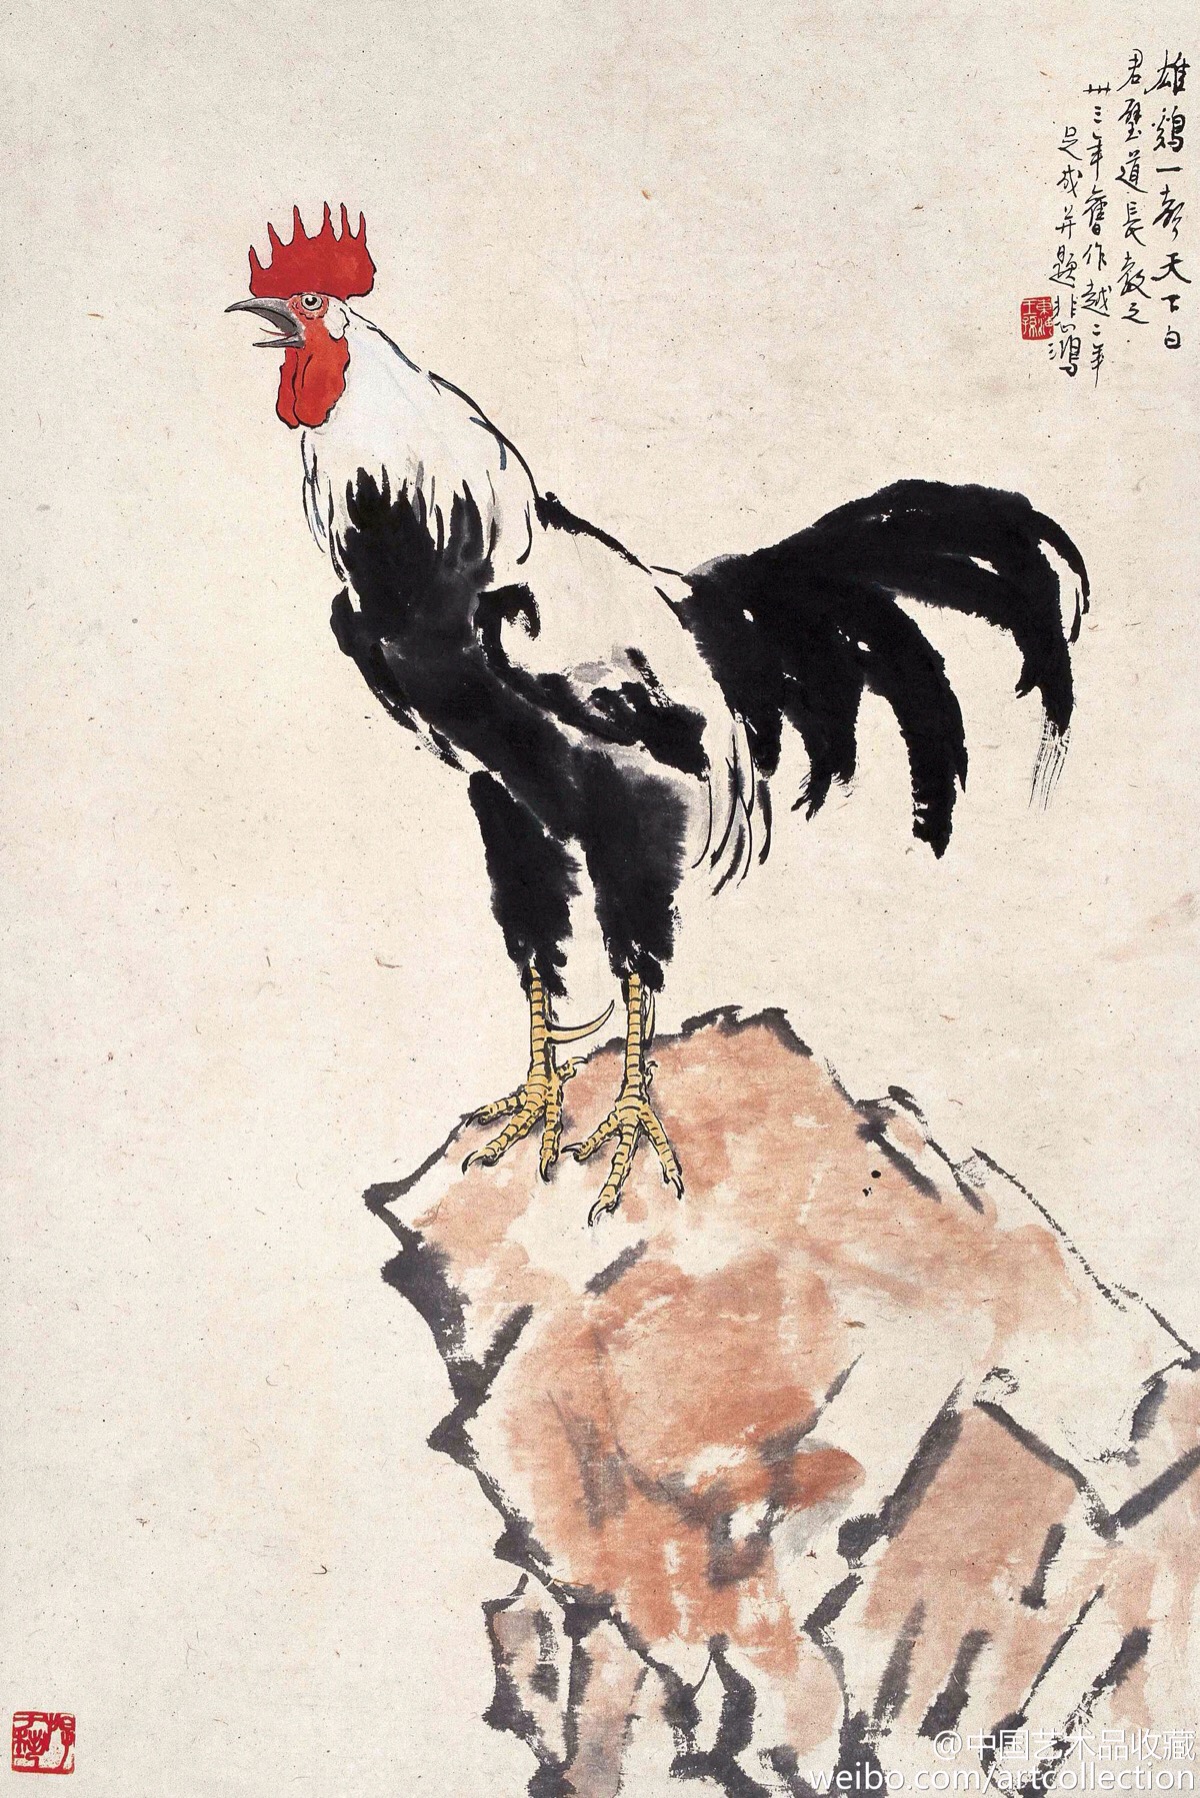 【 徐悲鸿 《大吉图》 】在中国古代,雄鸡一直被文人们所称赞